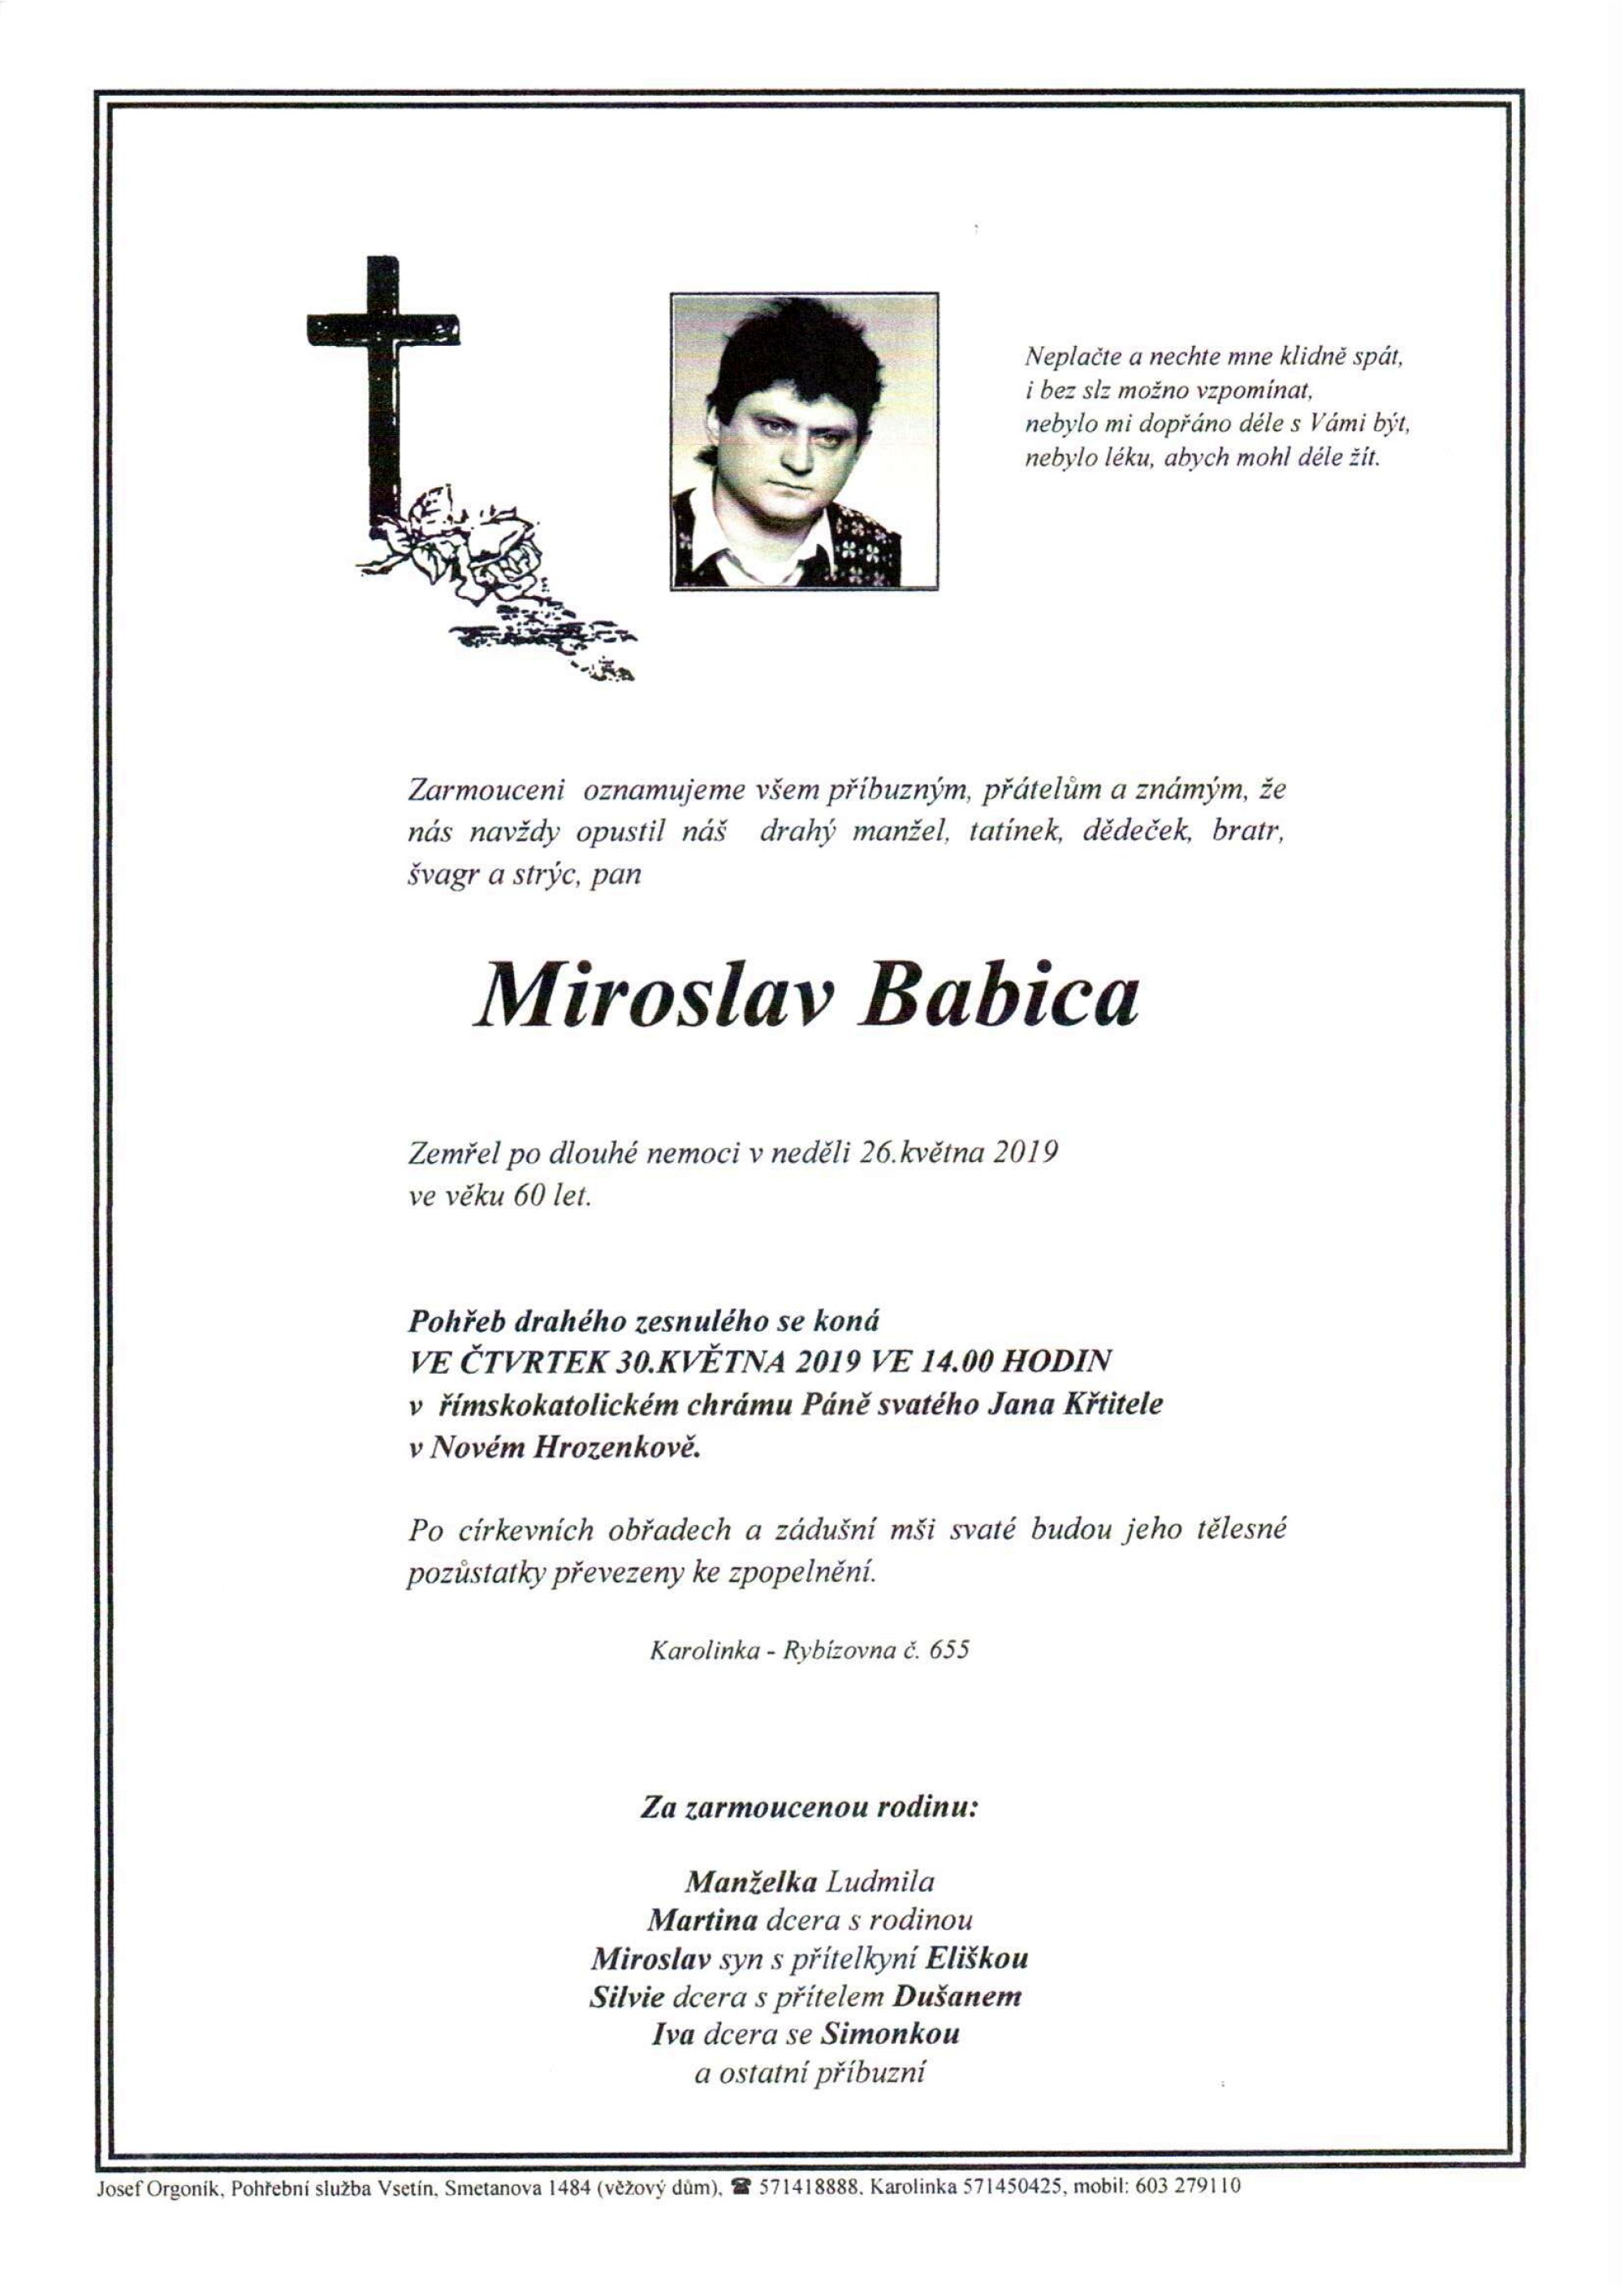 Miroslav Babica